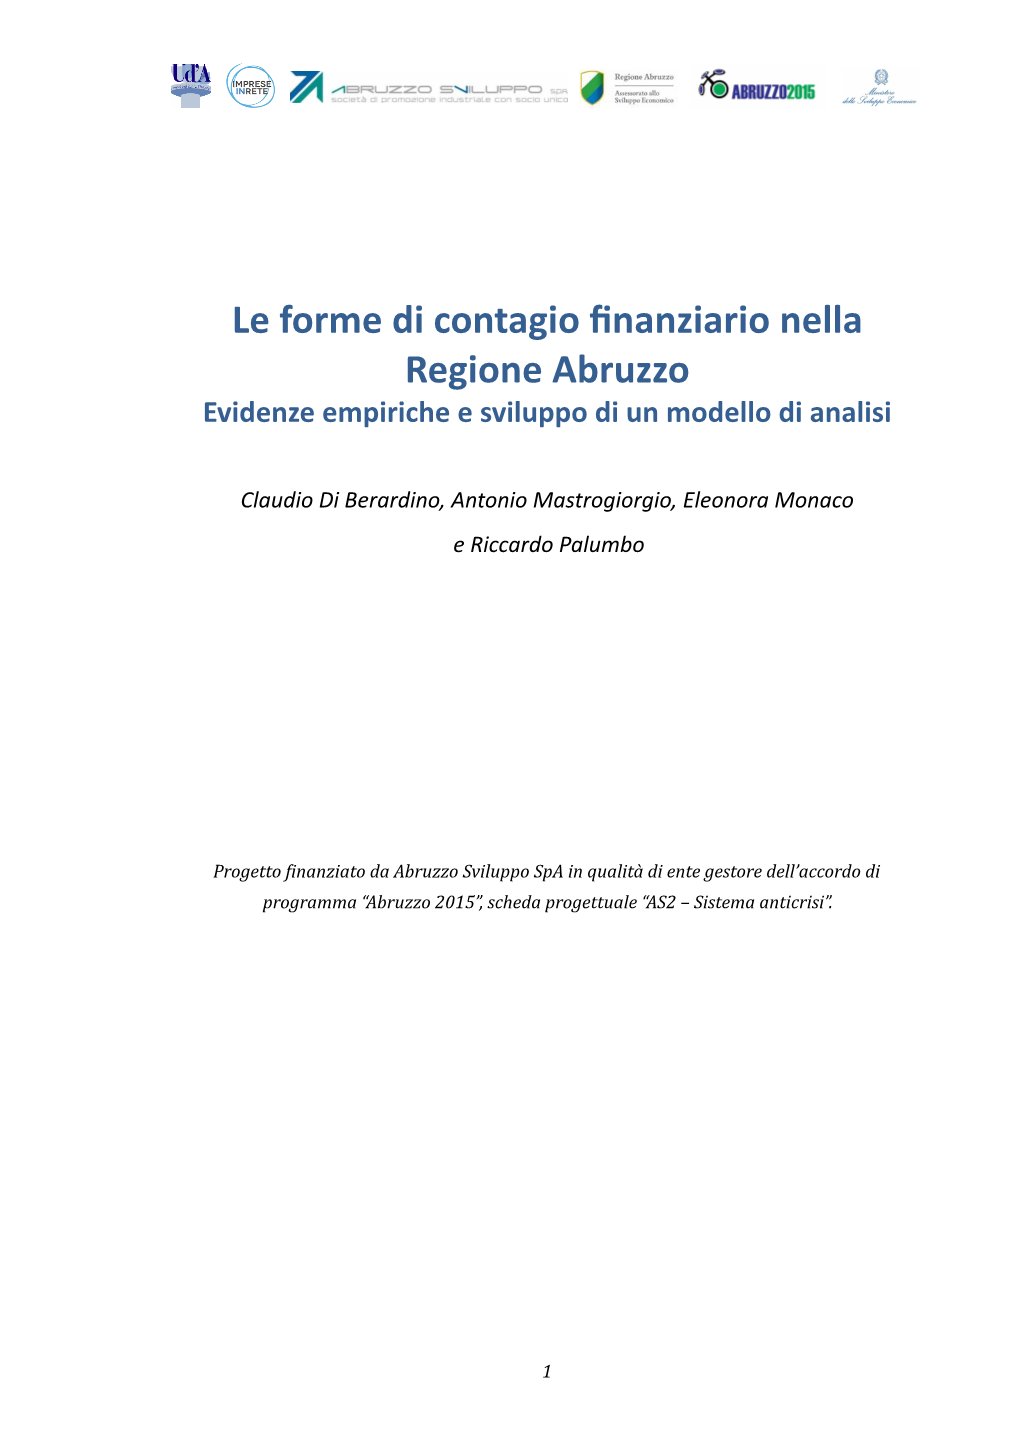 Le Forme Di Contagio Finanziario Nella Regione Abruzzo